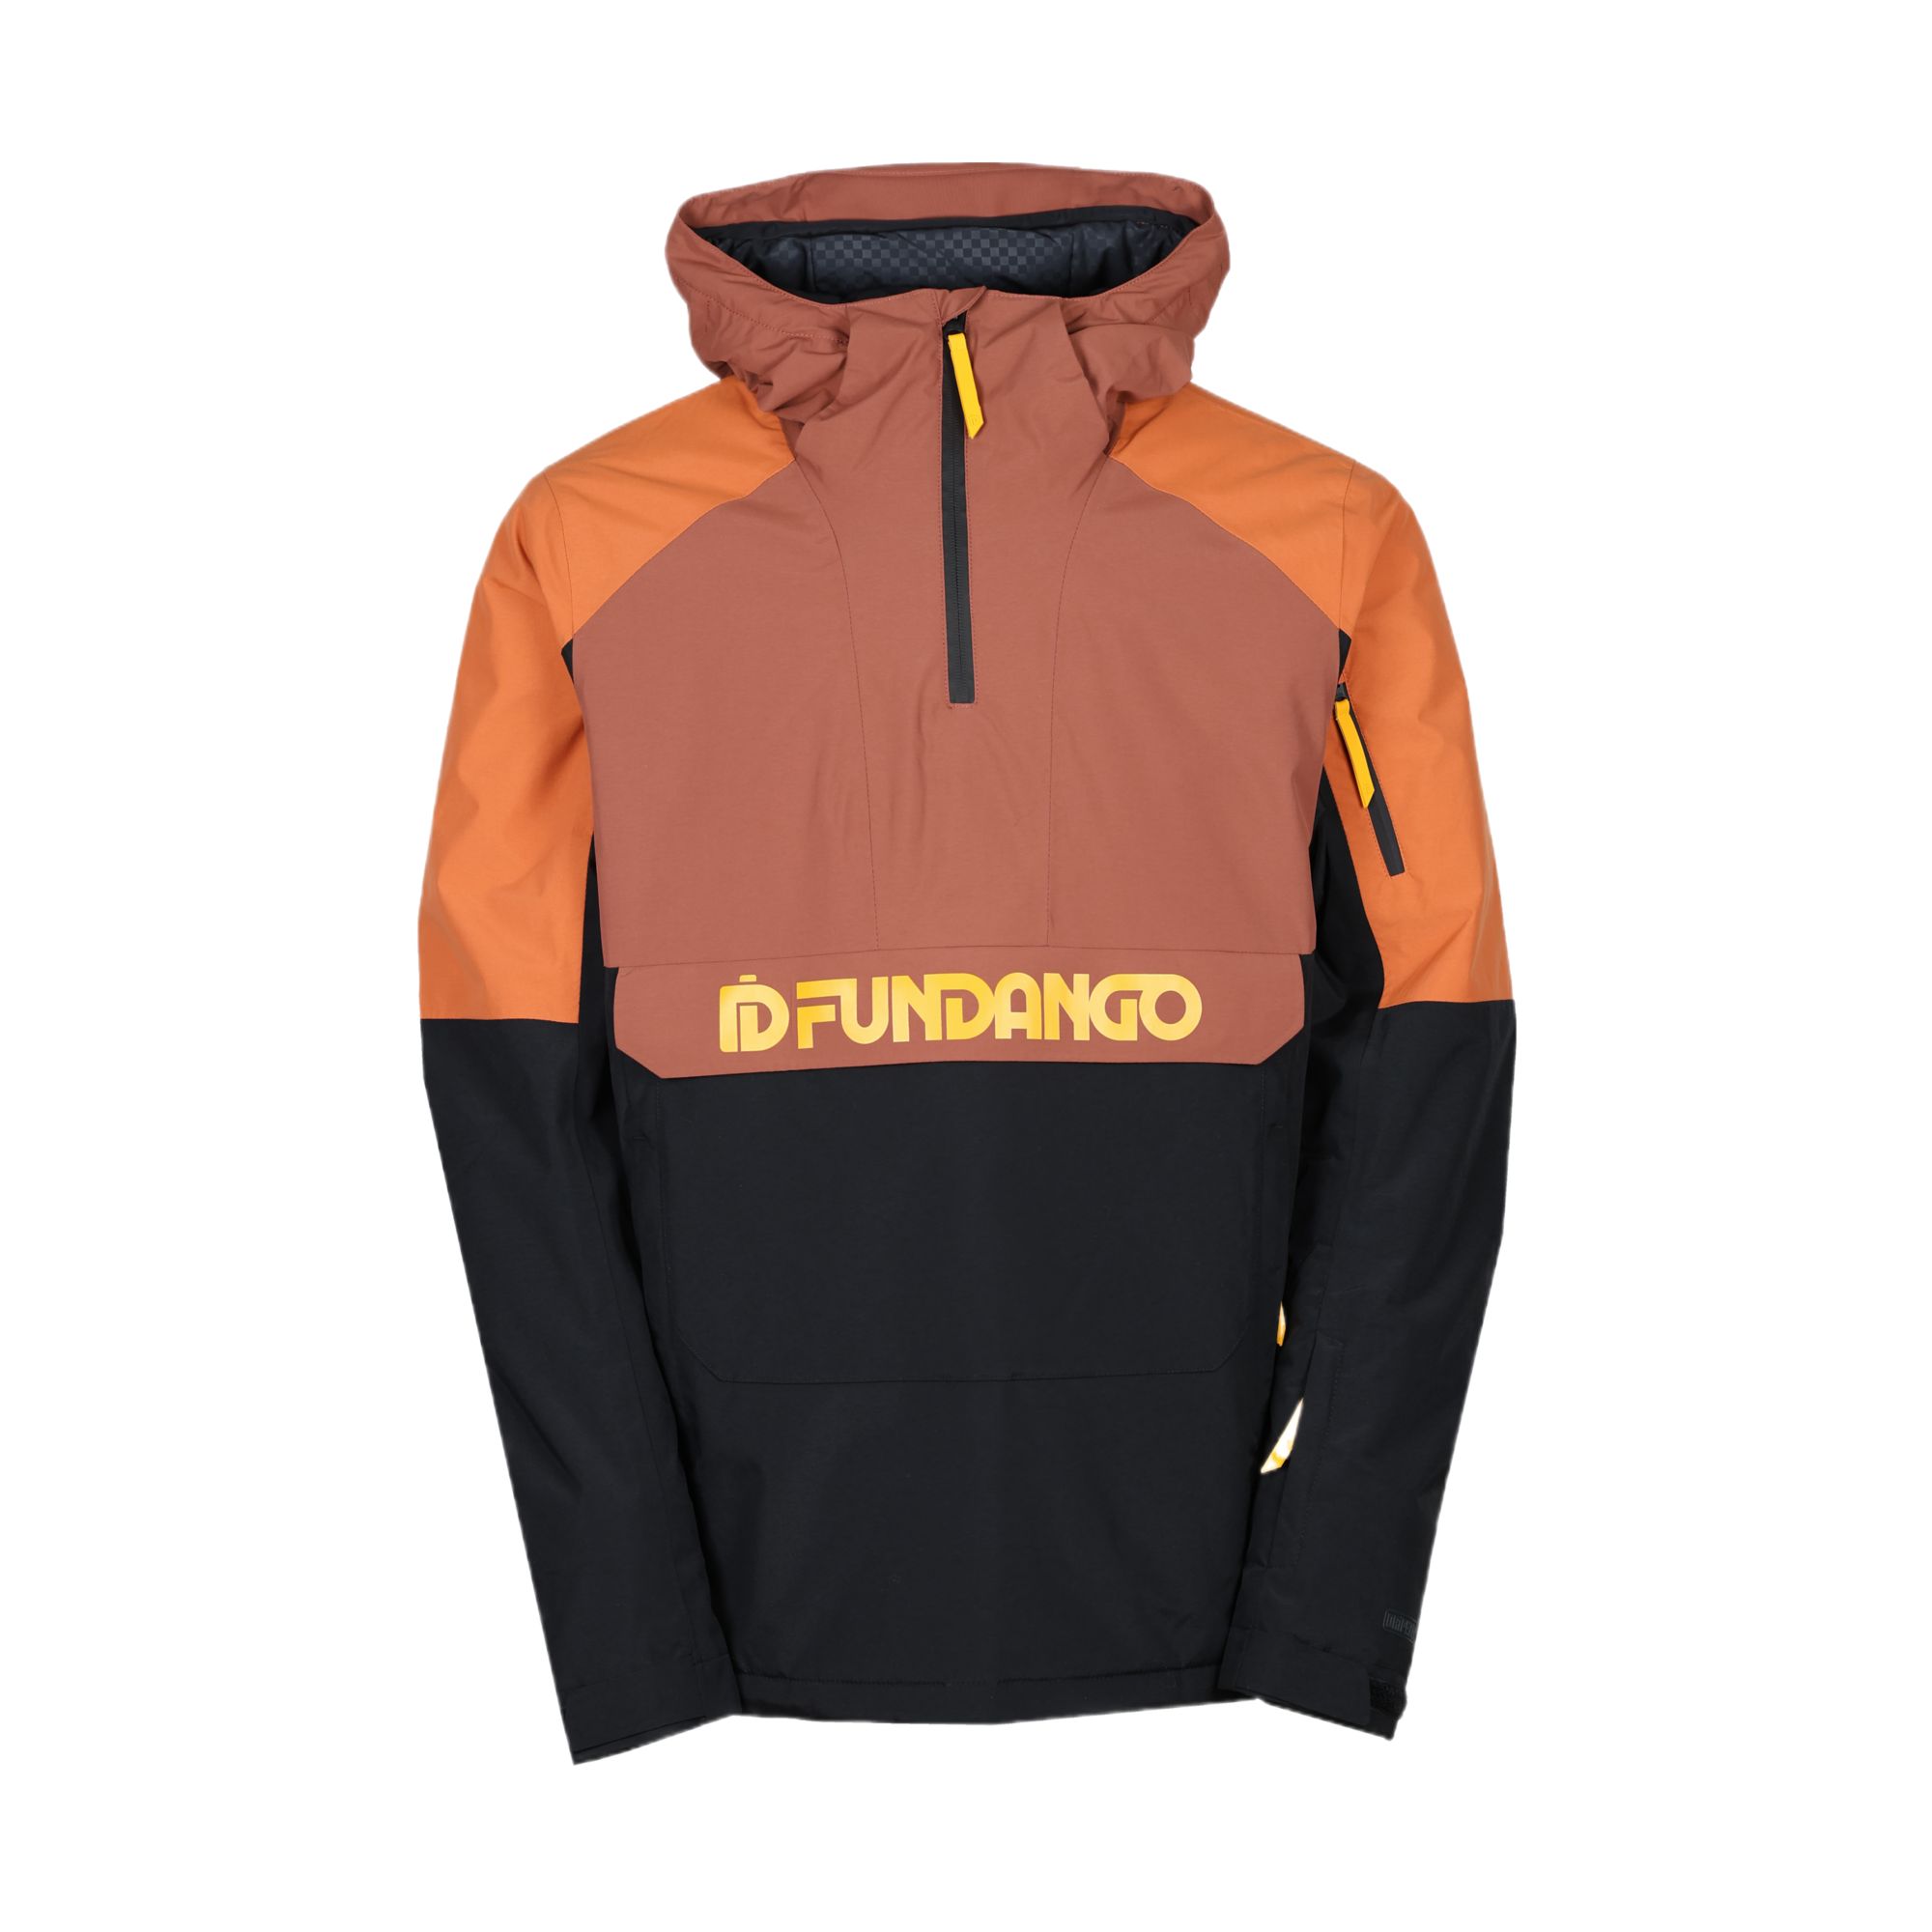 Burnaby Fundango - 3143096